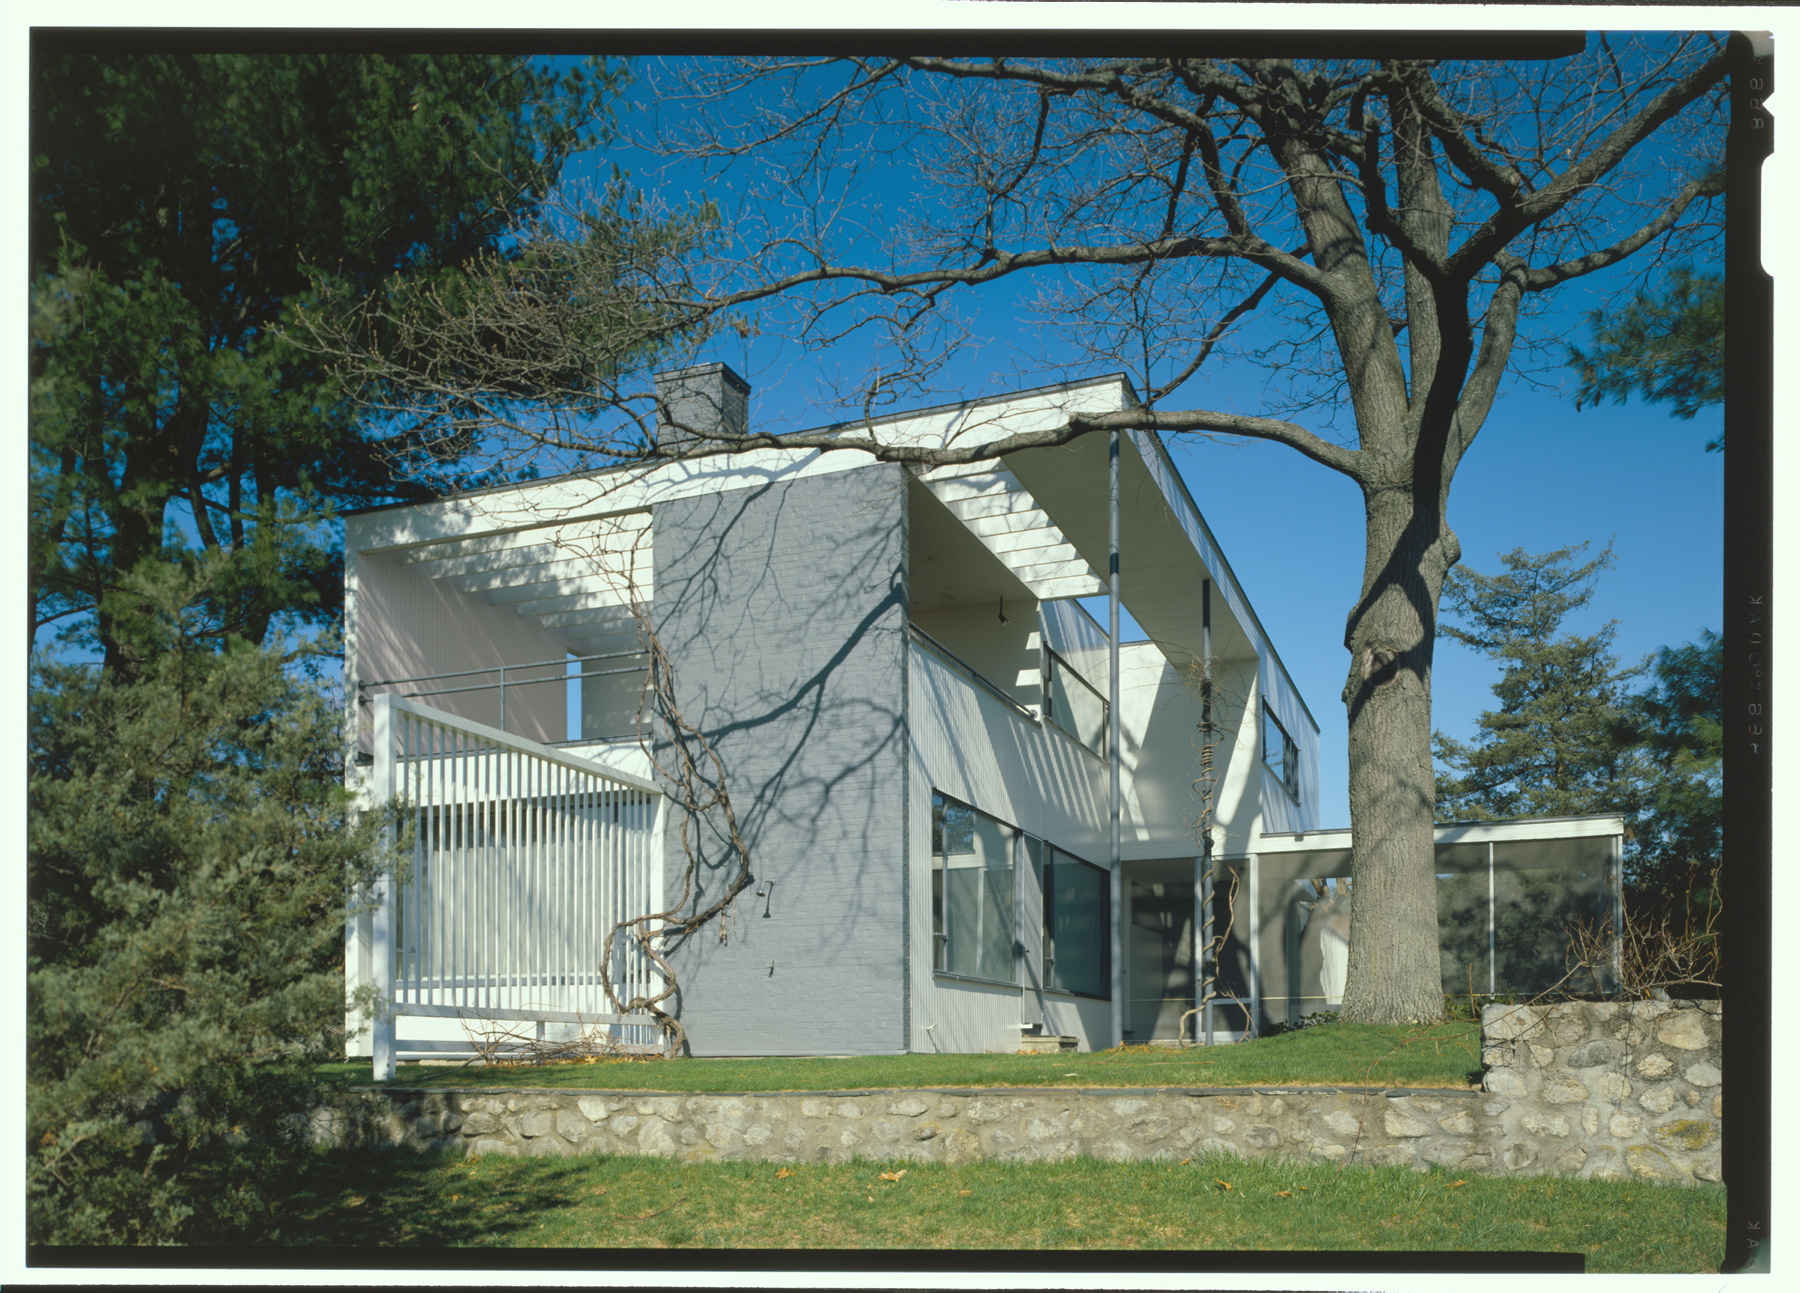 Rodzinny dom architekta w miasteczku Lincoln w Stanach Zjednoczonych stał się wizytówką jego twórczości.